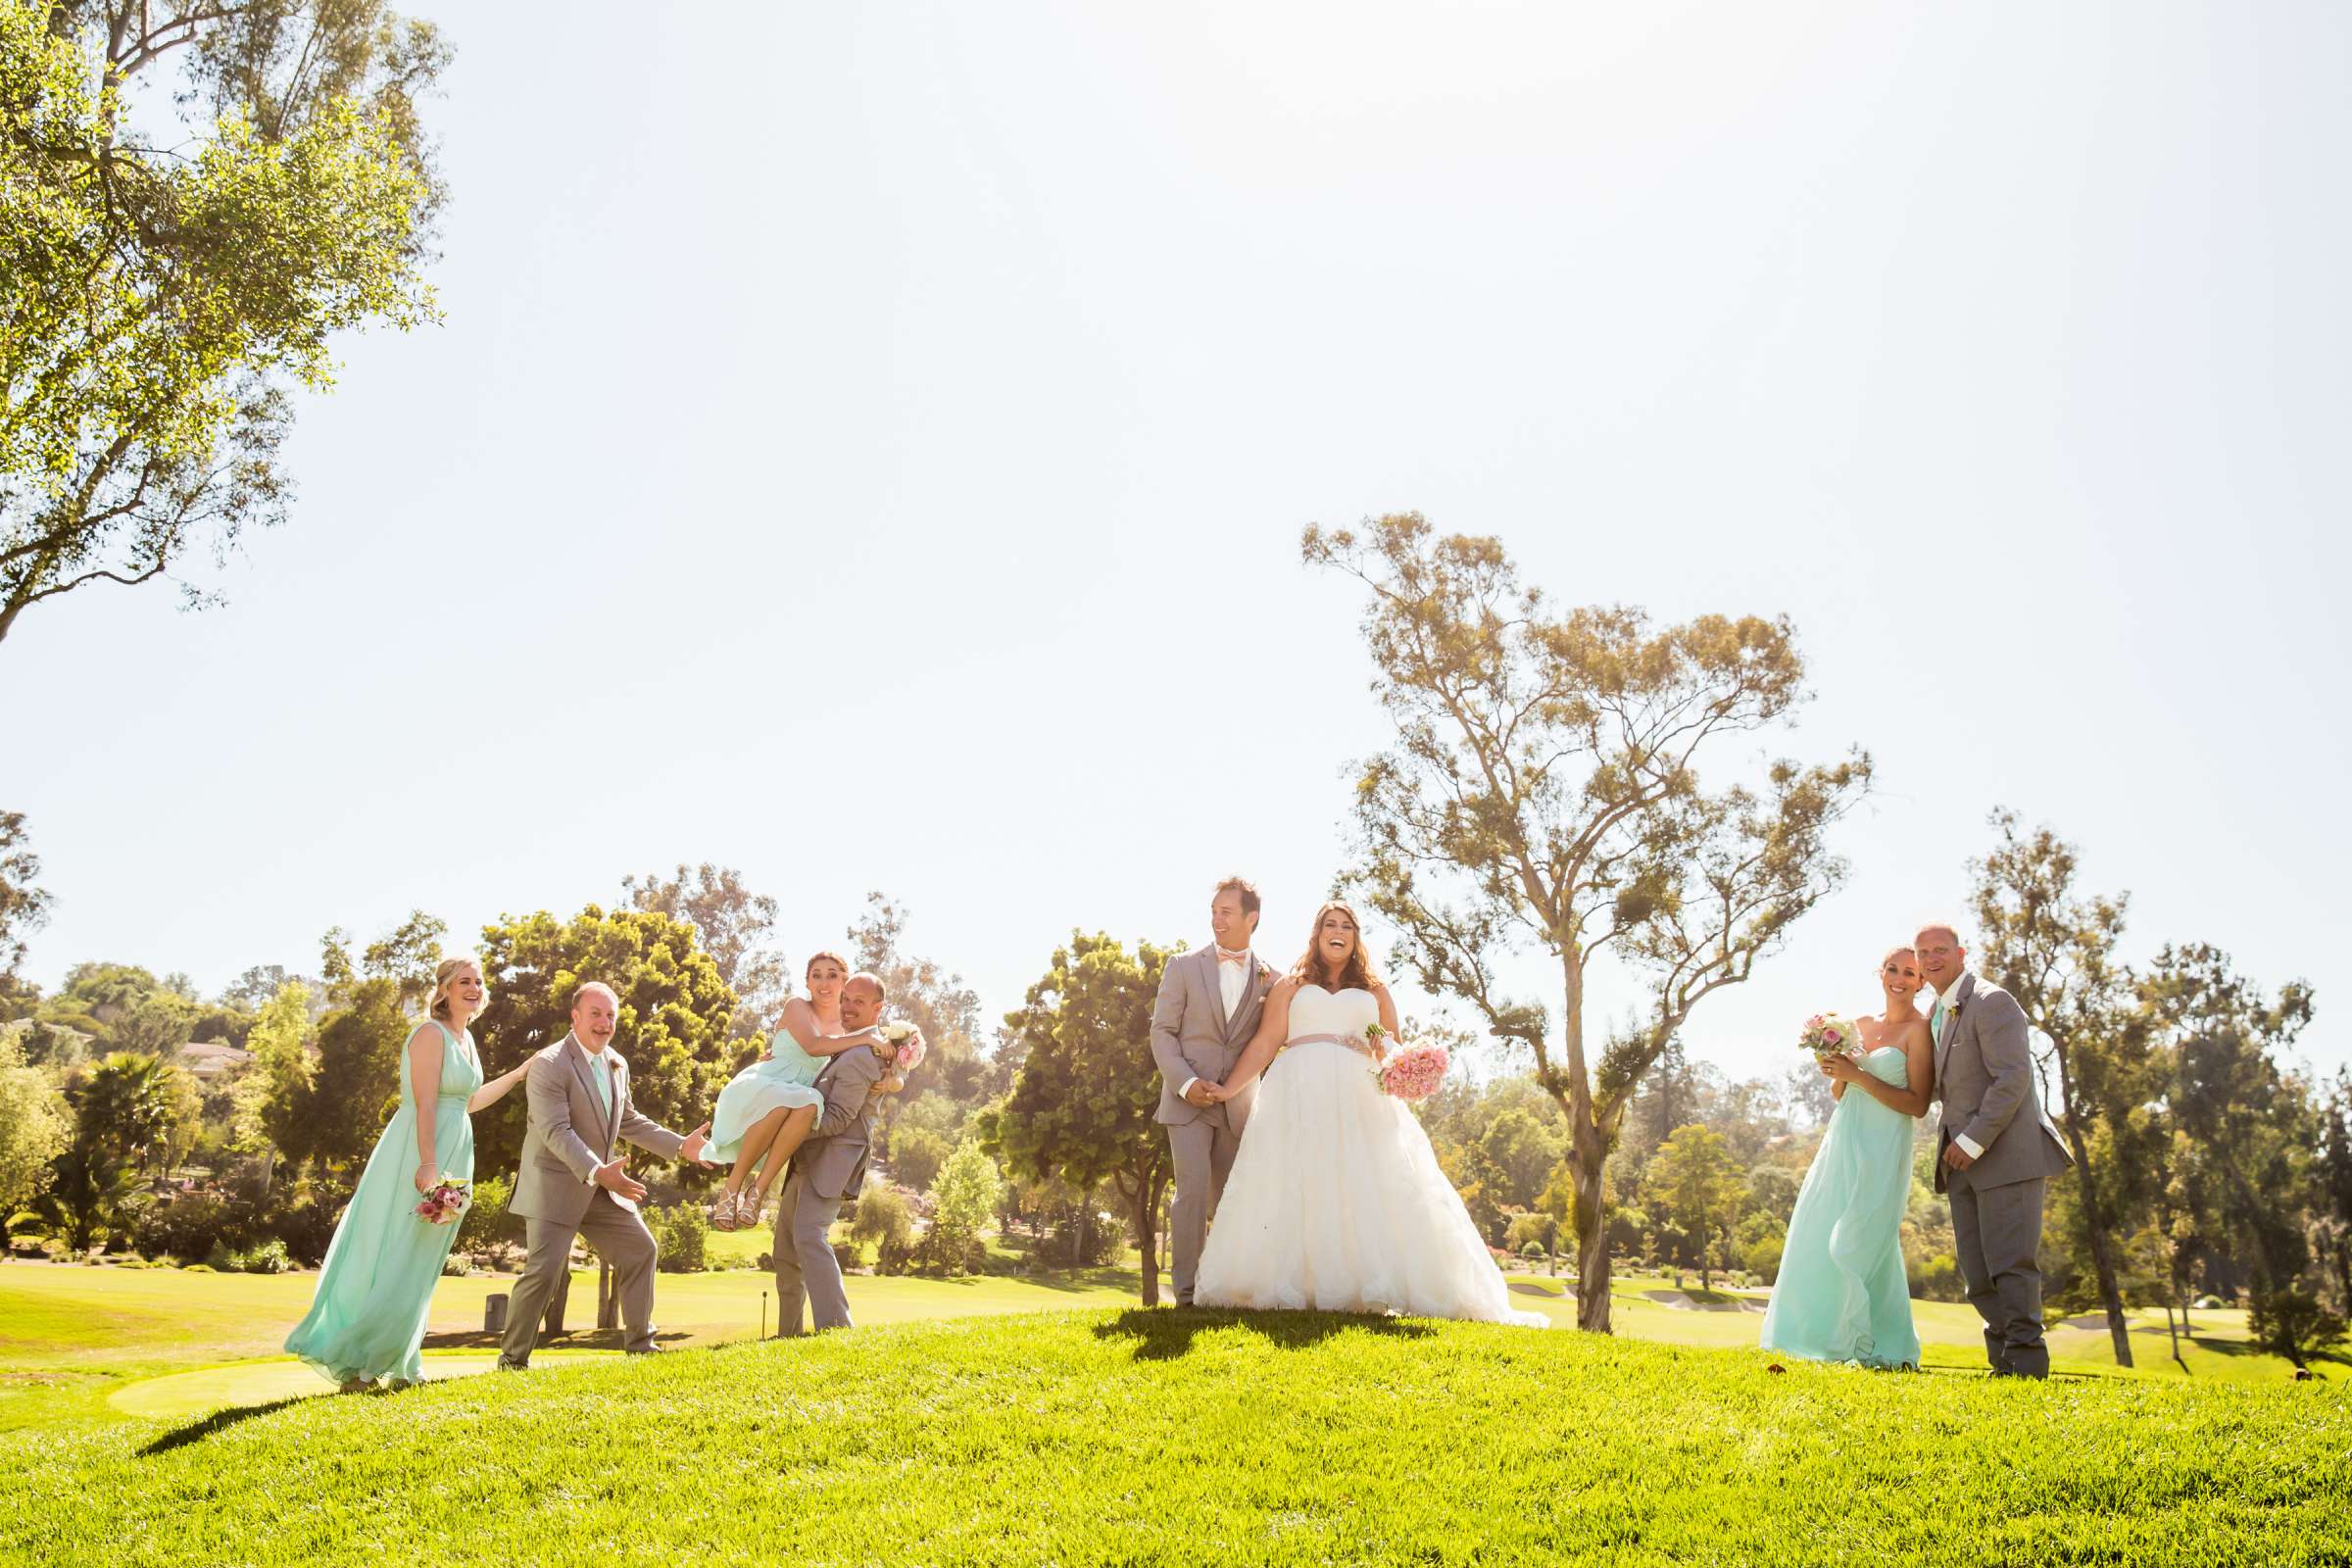 Rancho Santa Fe Golf Club Wedding coordinated by Monarch Weddings, Carolynn and Jon Wedding Photo #54 by True Photography